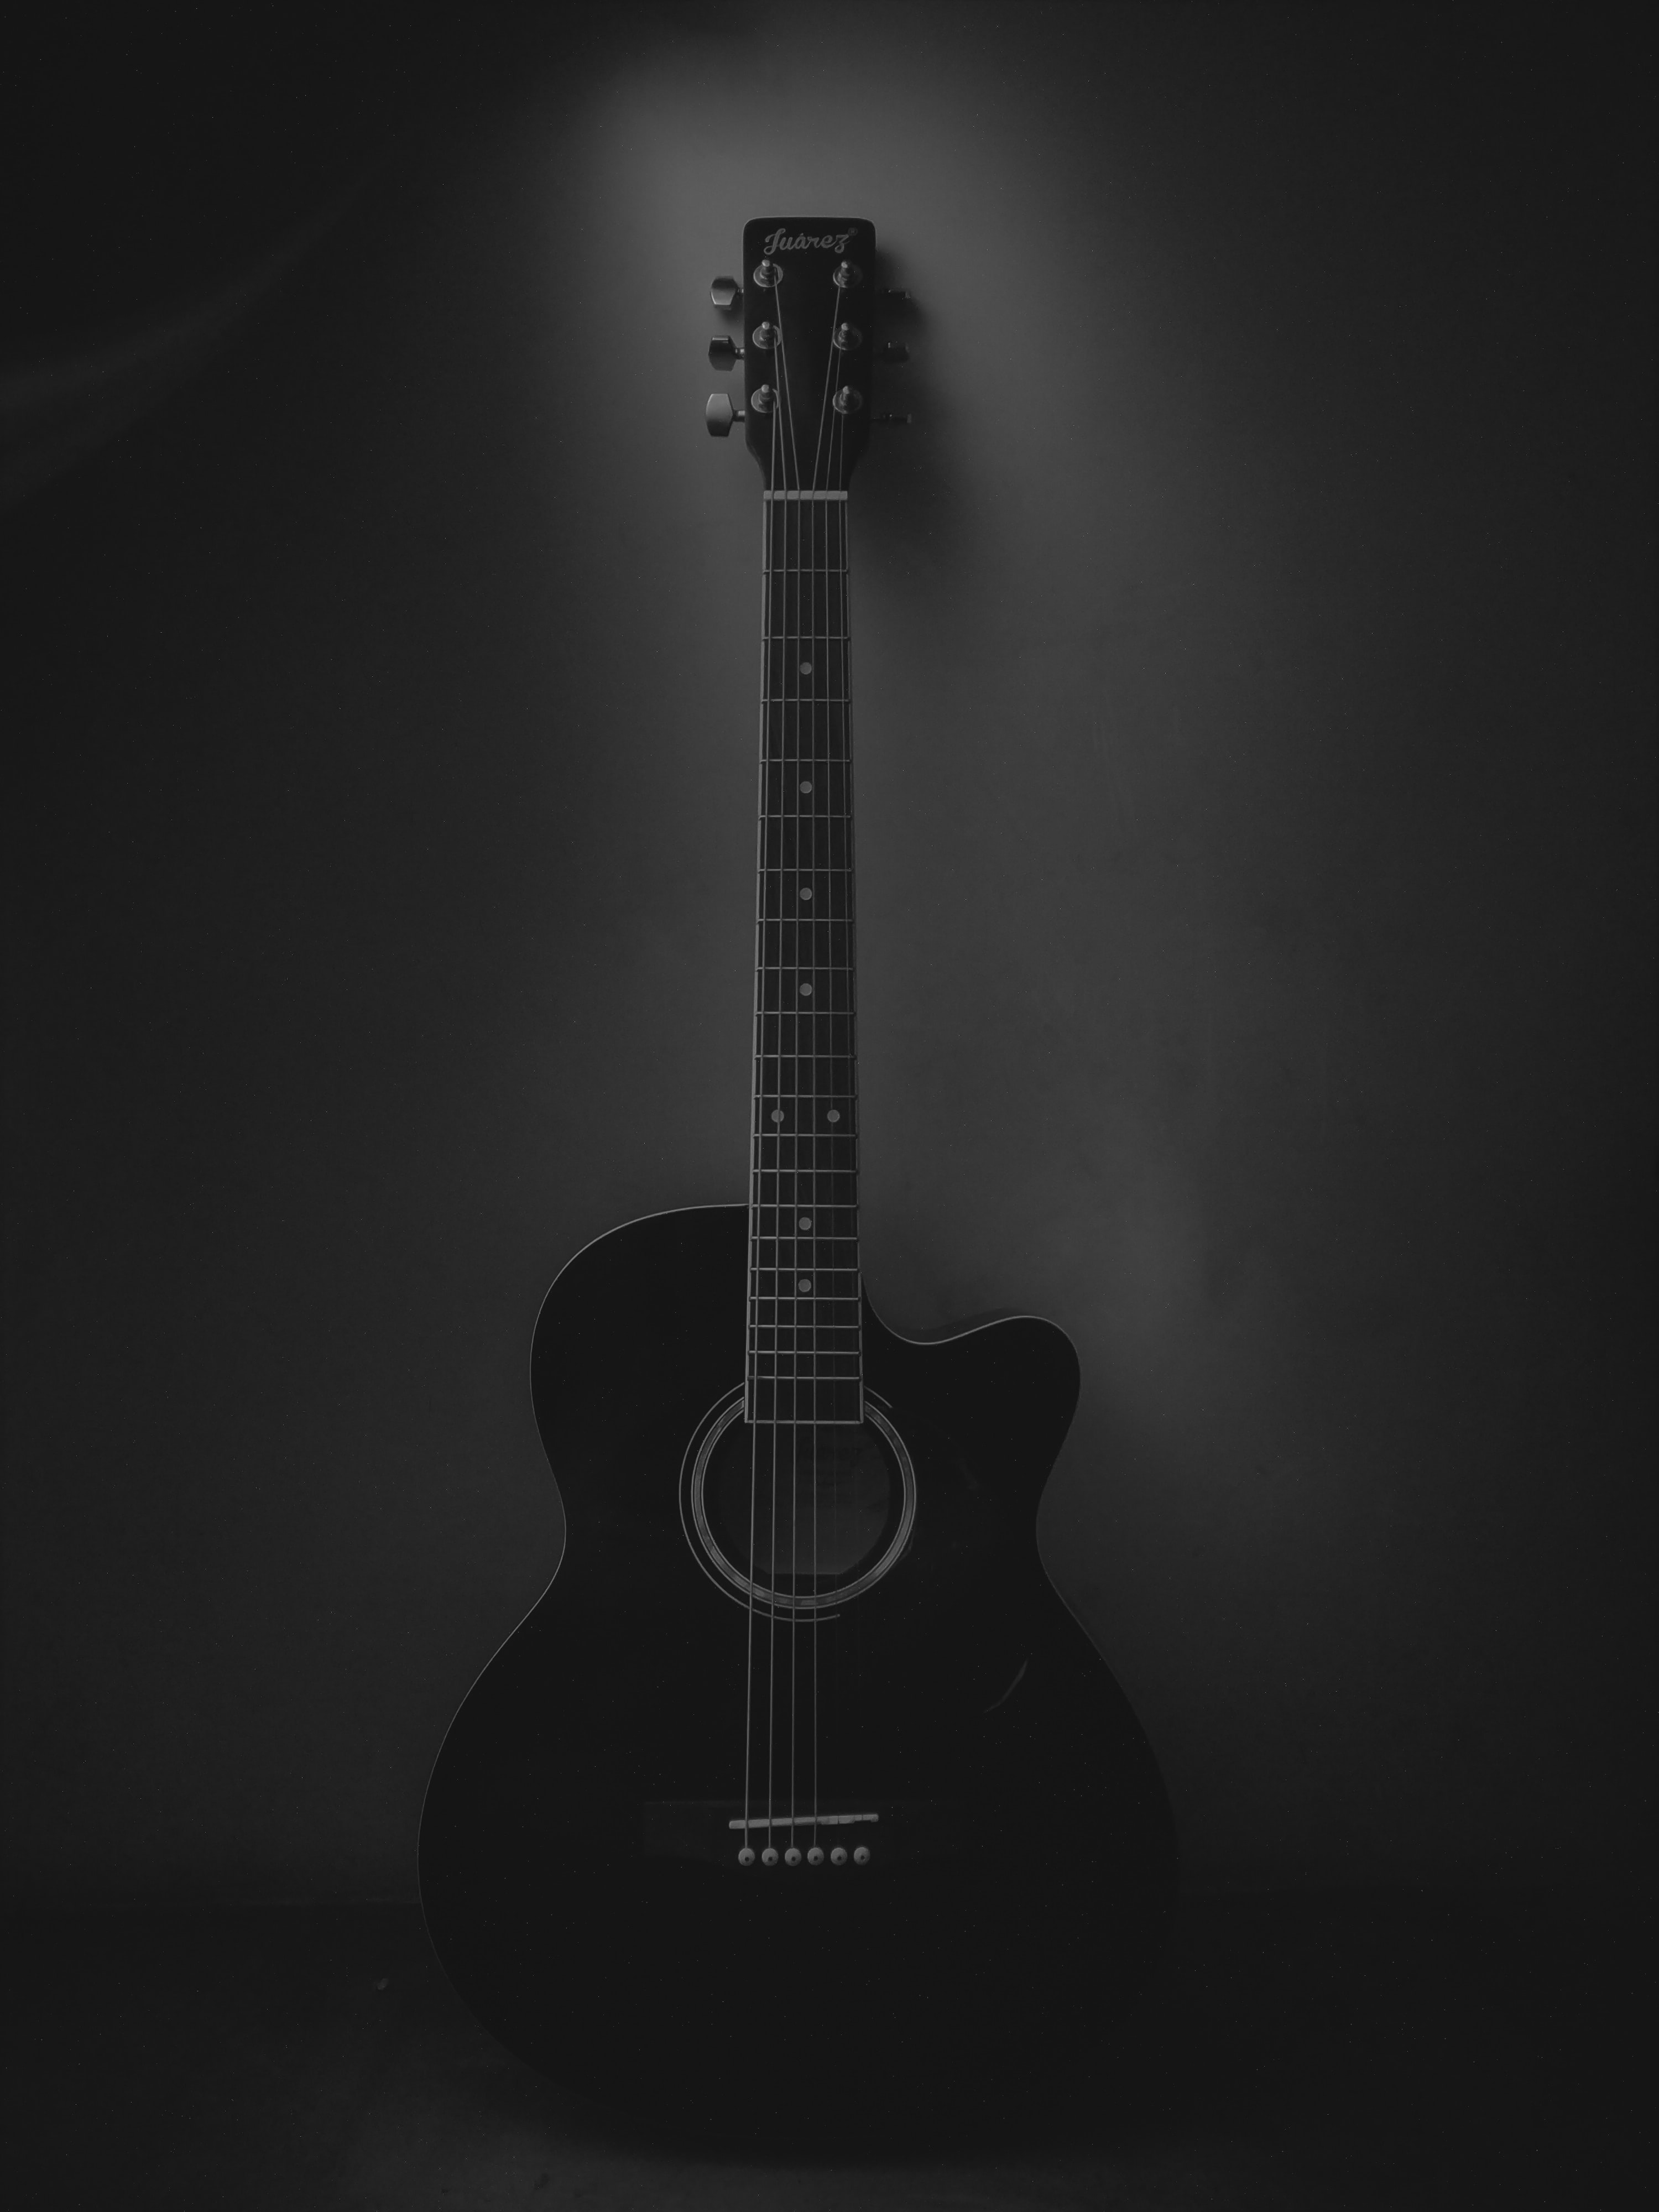 dark, guitar, black, music, acoustic guitar, musical instrument